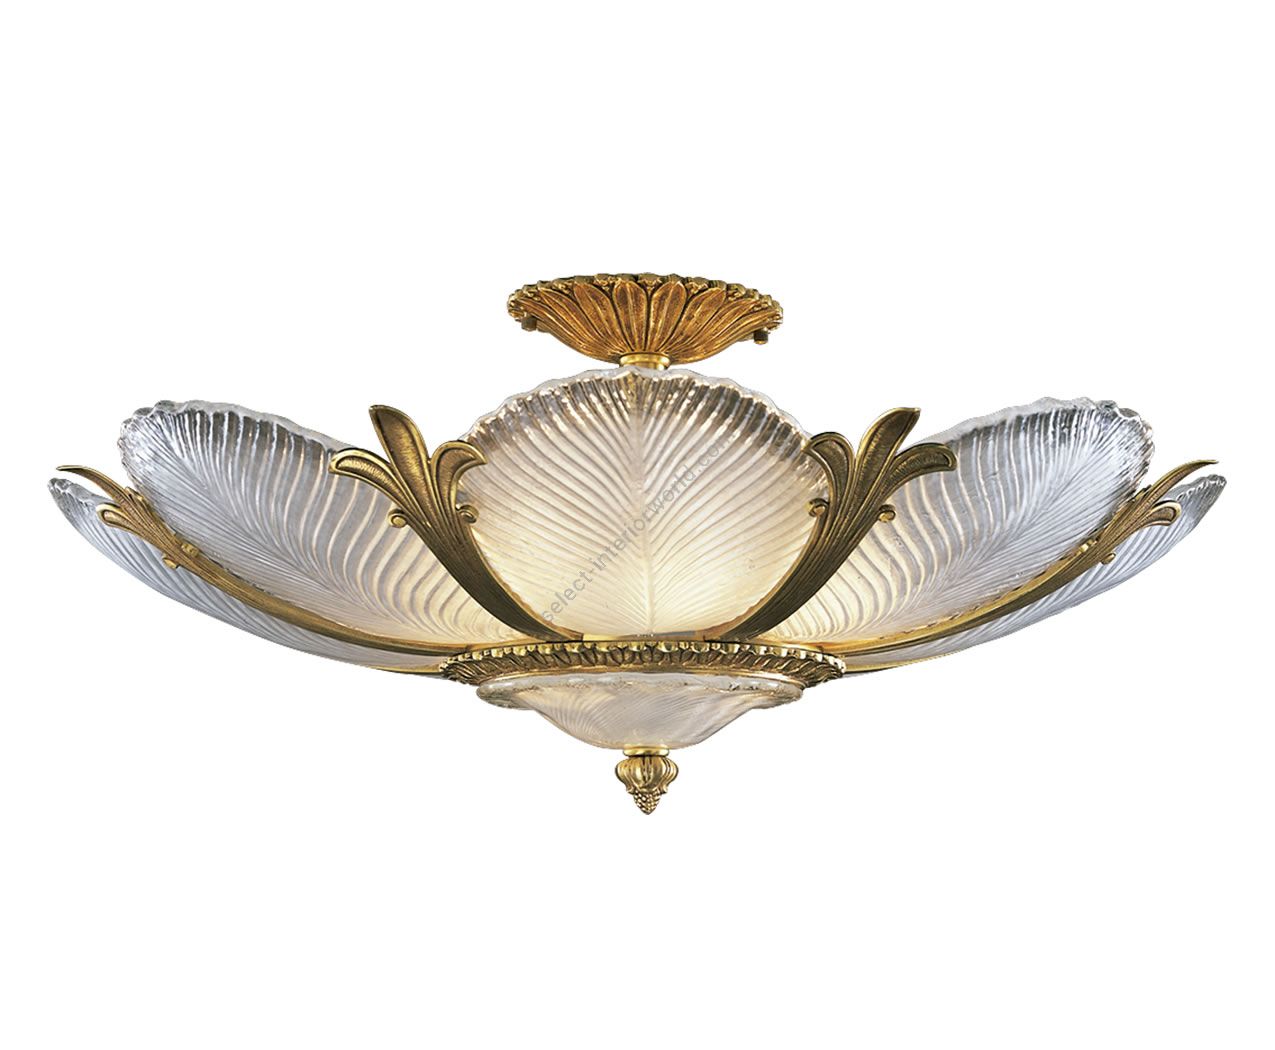 Mariner / Venetian Glass Ceiling Lamp / ROYAL HERITAGE 19401.0